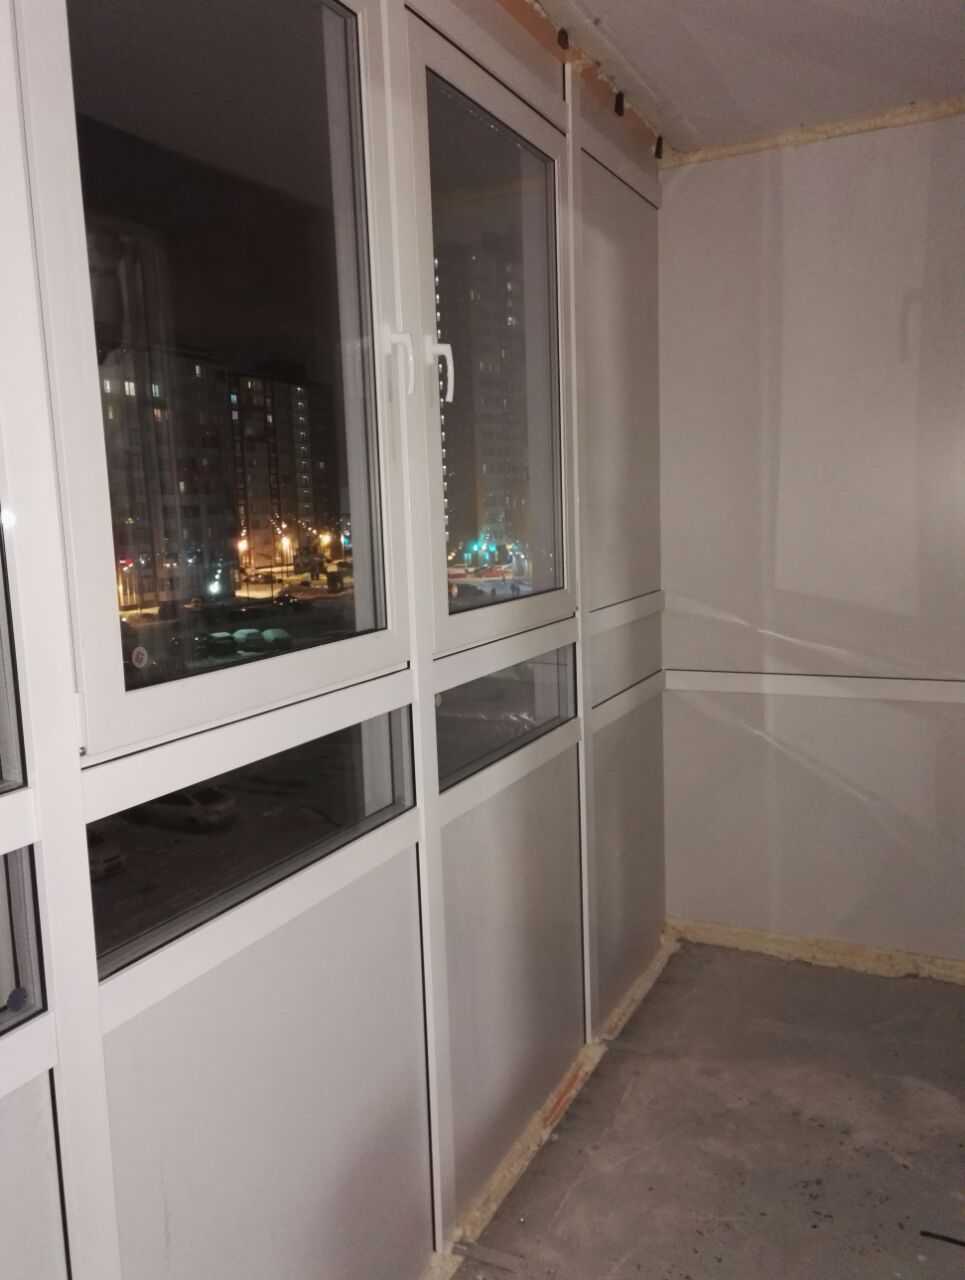 Теплое остекление балкона: отзывы о замене холодного на полутеплое раздвижное остекление на лоджии